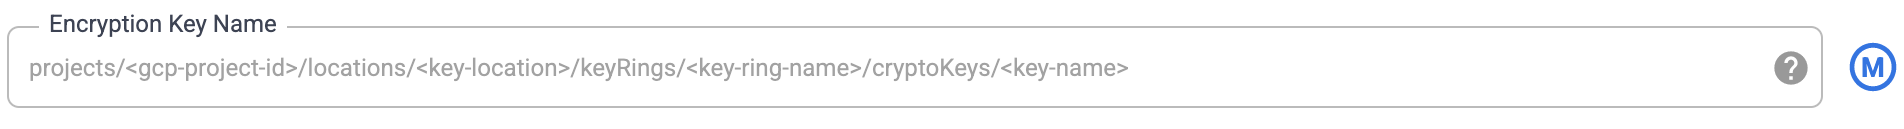 Nama kunci enkripsi